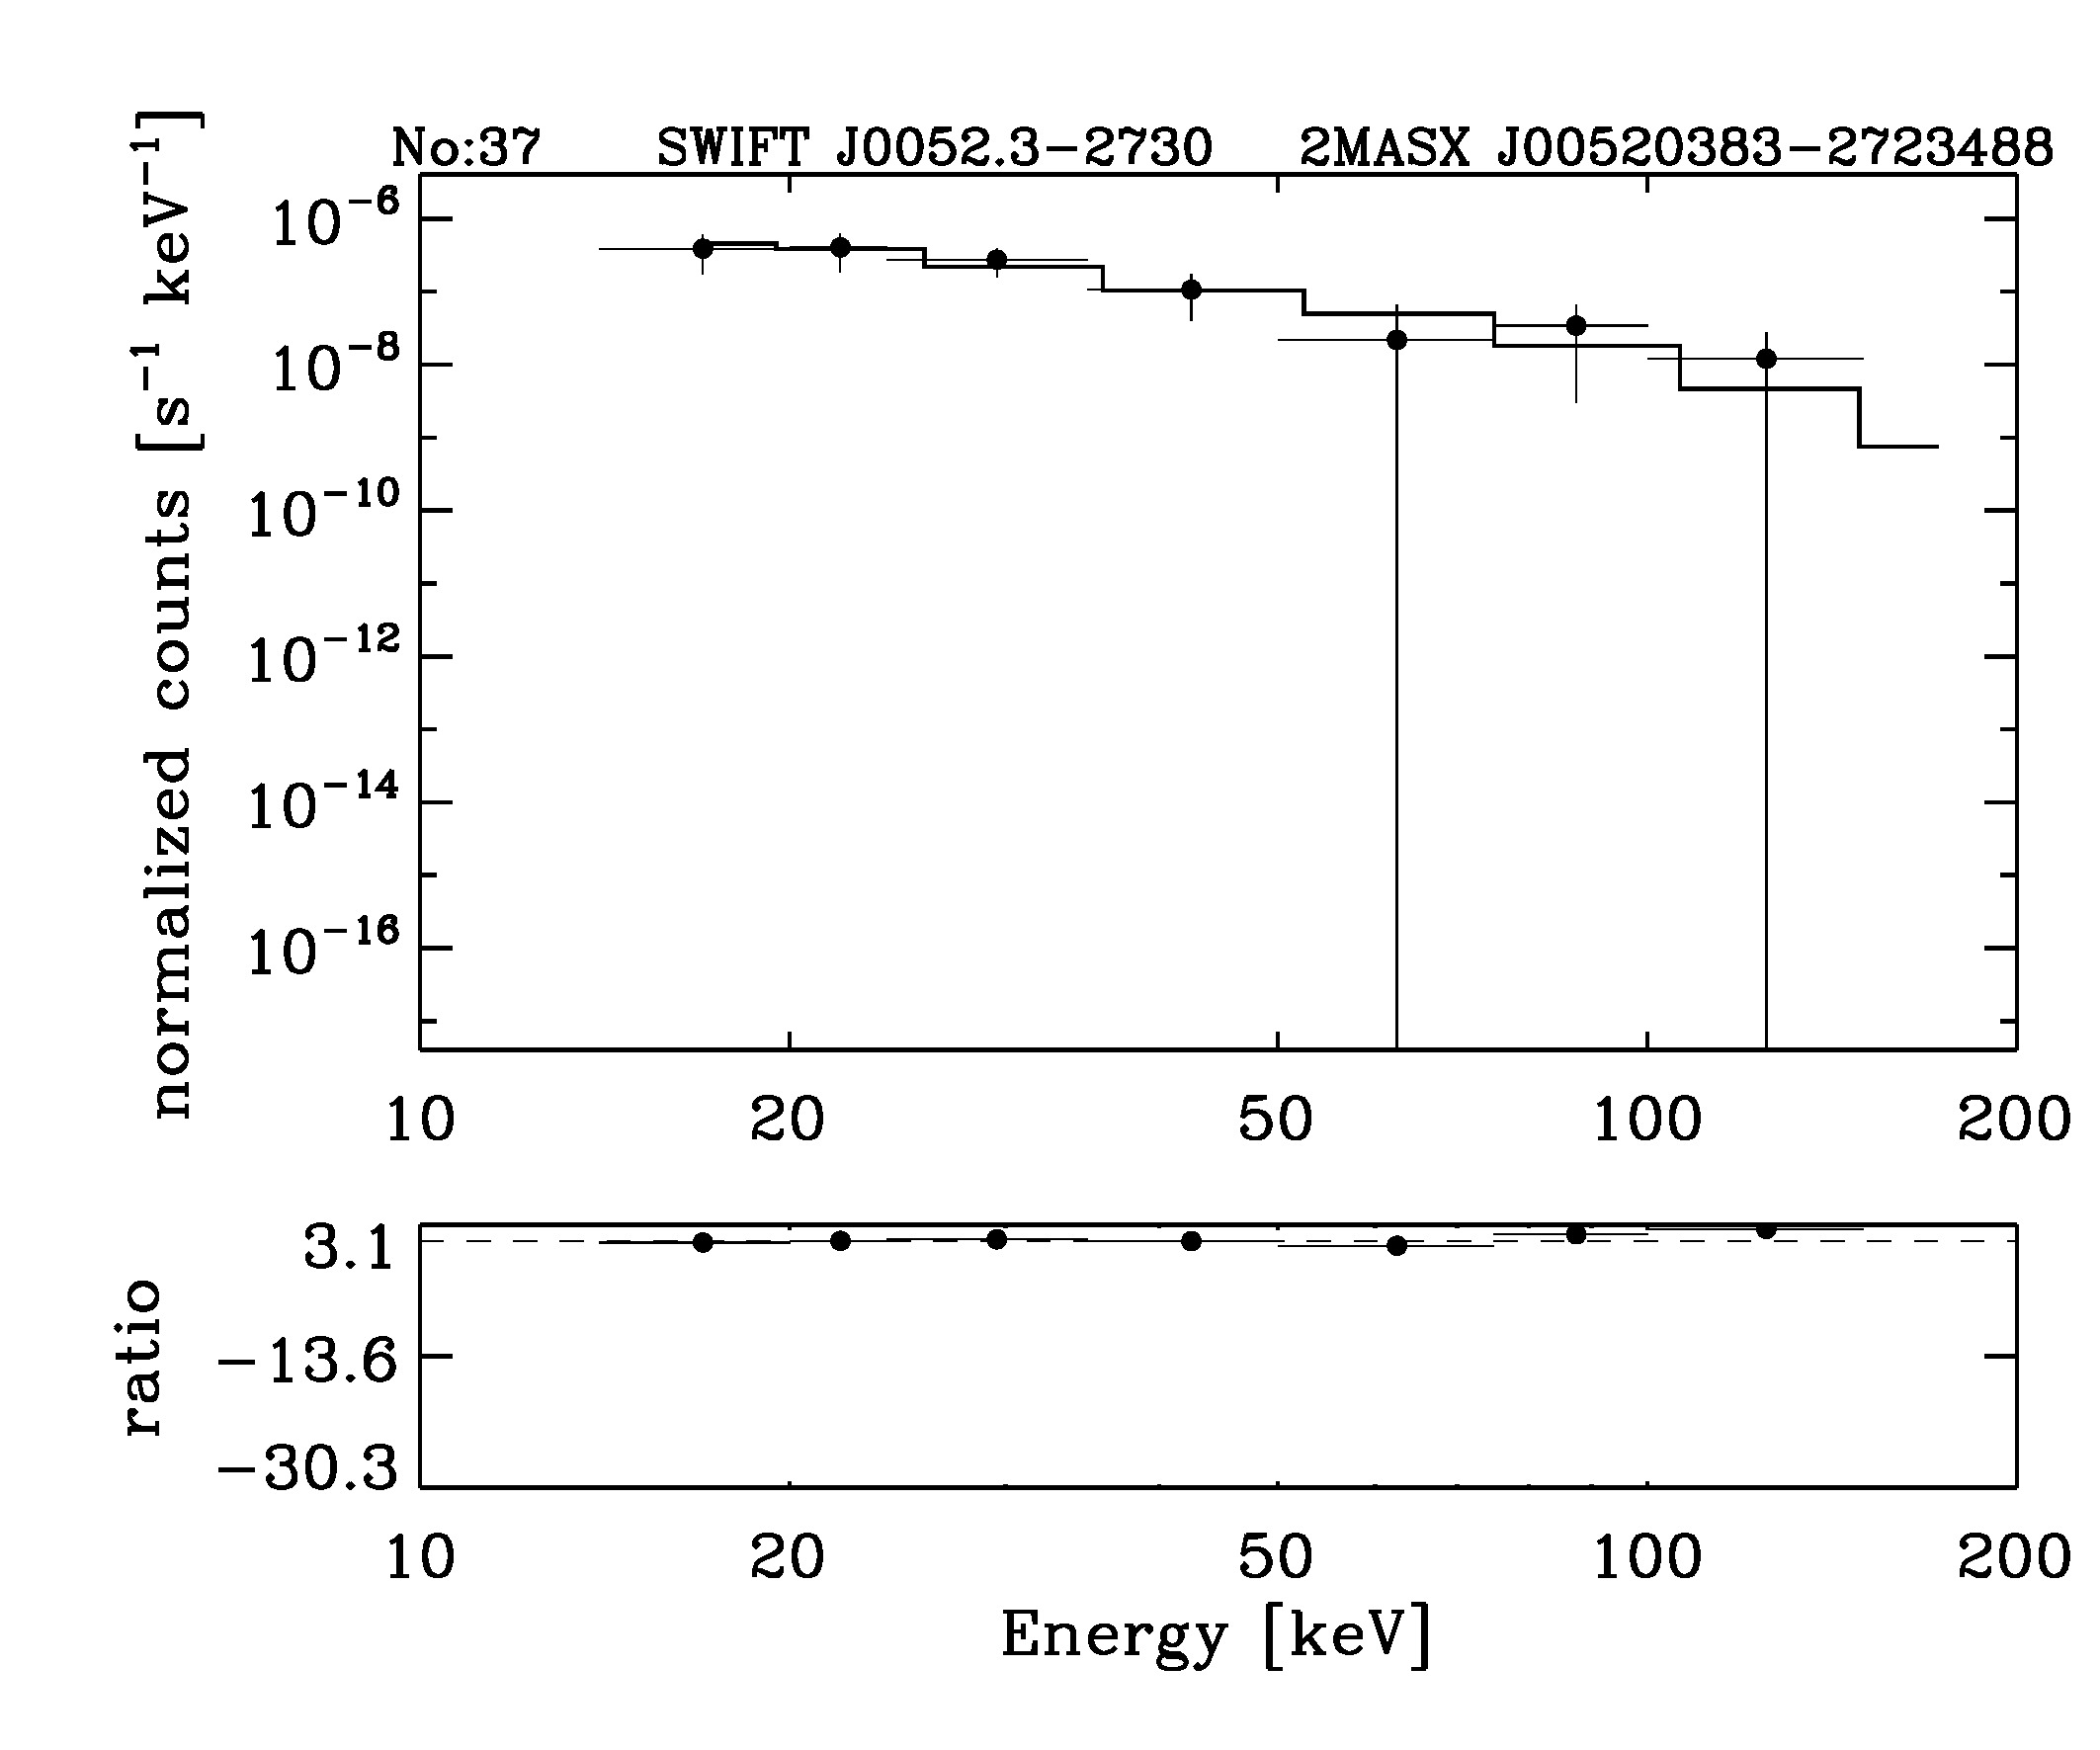 BAT Spectrum for SWIFT J0052.3-2730